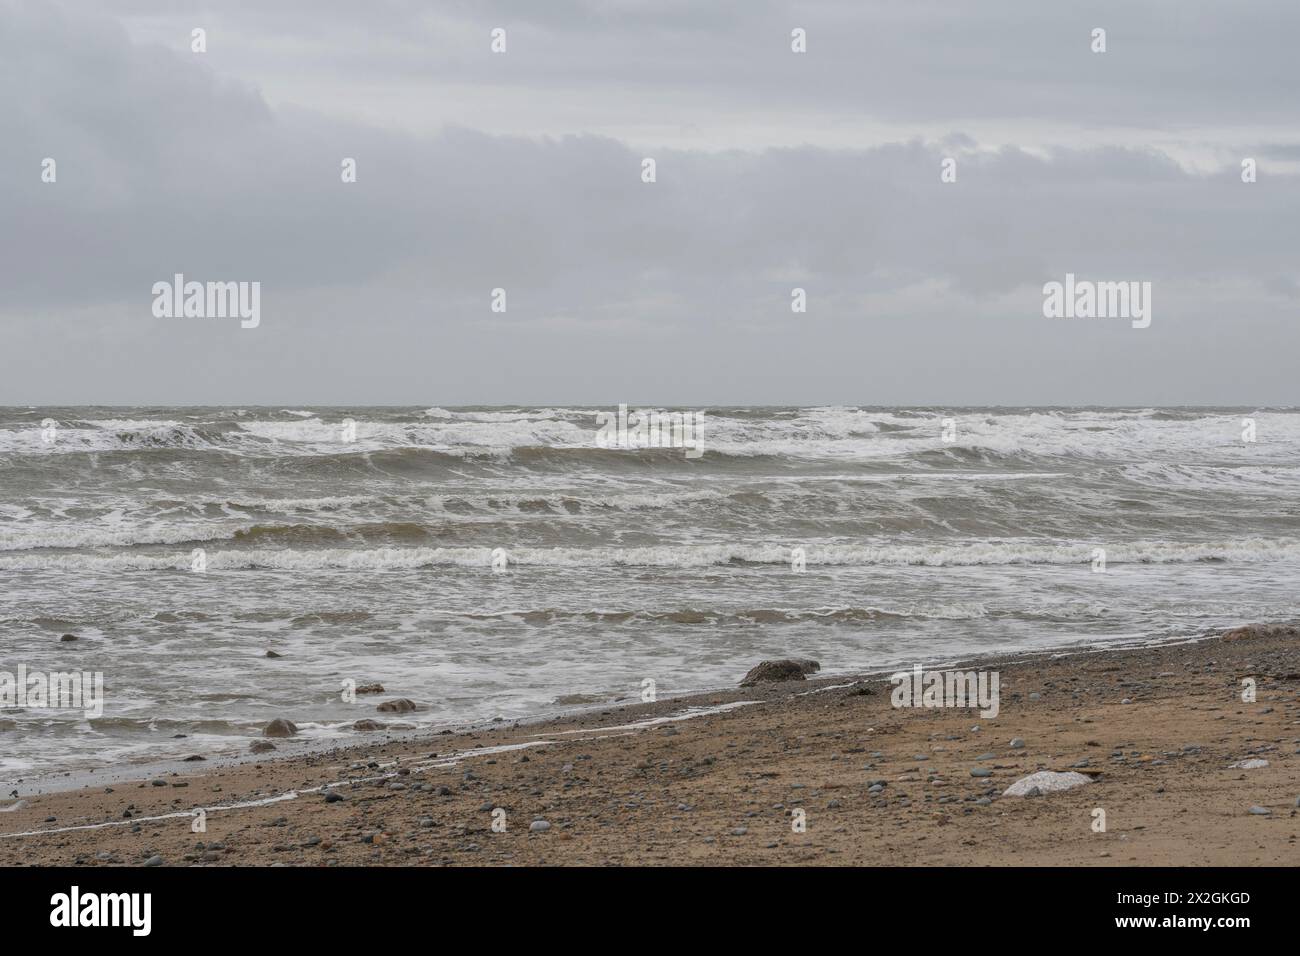 Steiniger Strand unter grauem Himmel mit Wellen im weißen Wasser, stimmungsvolle gedämpfte Meereslandschaft Stockfoto